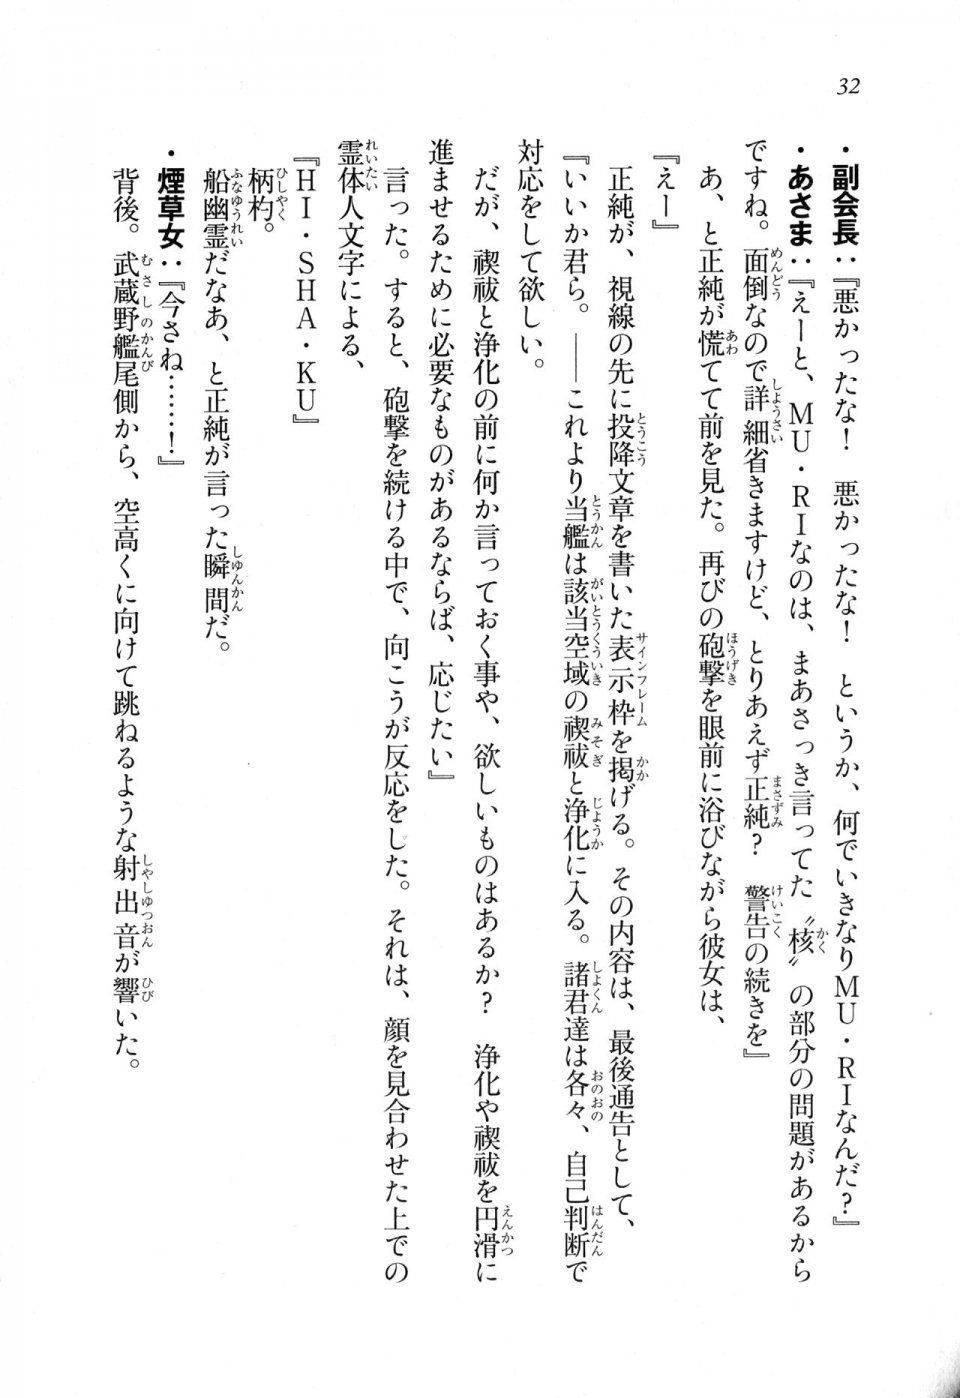 Kyoukai Senjou no Horizon LN Sidestory Vol 1 - Photo #31